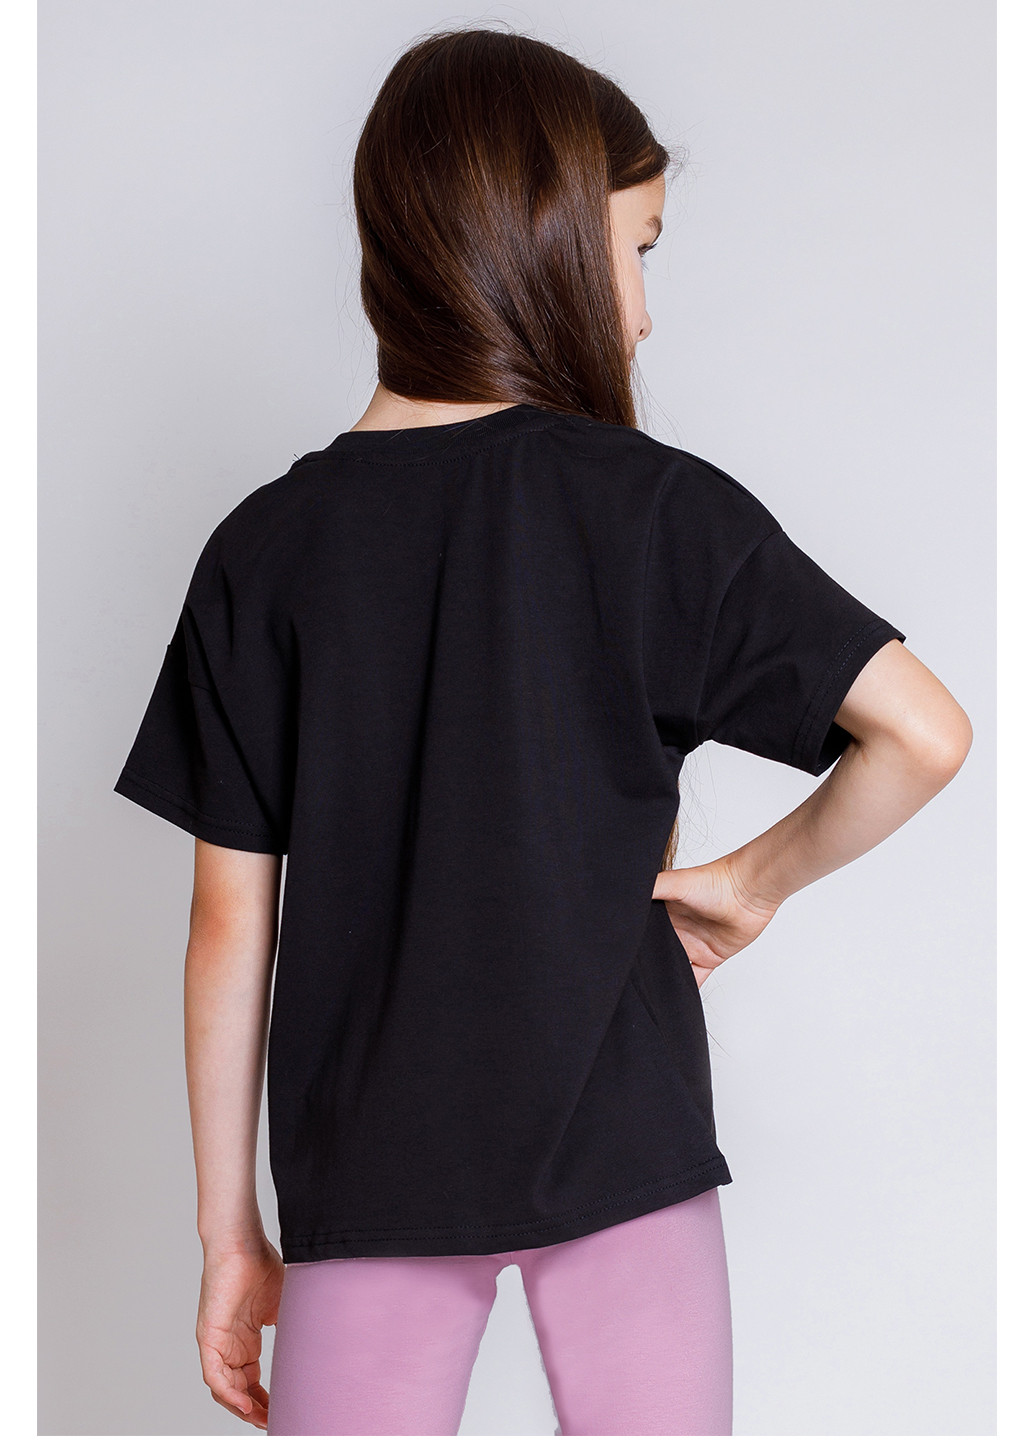 Чорна літня футболка для дівчинки Kosta 2653-2